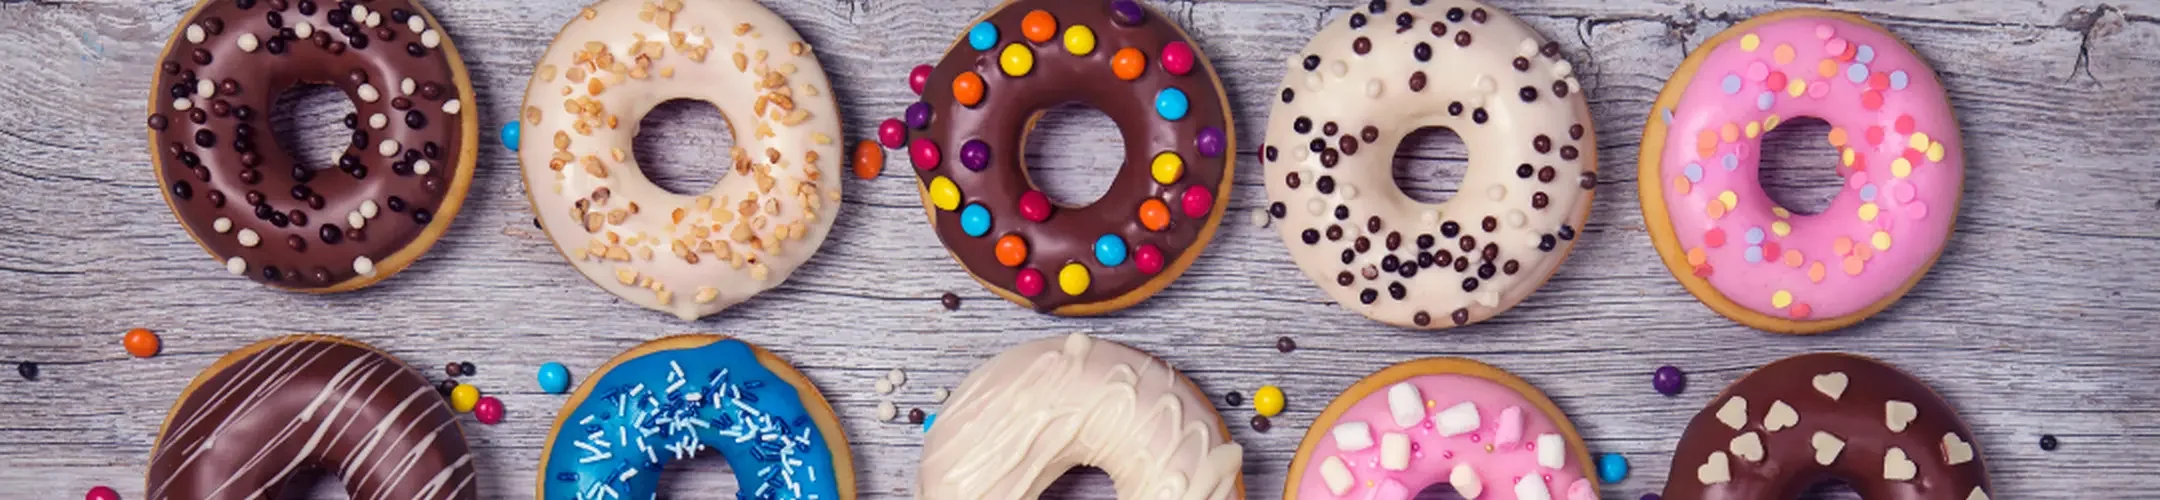 10 Donuts mit verschiedenen Glasuren und Toppings